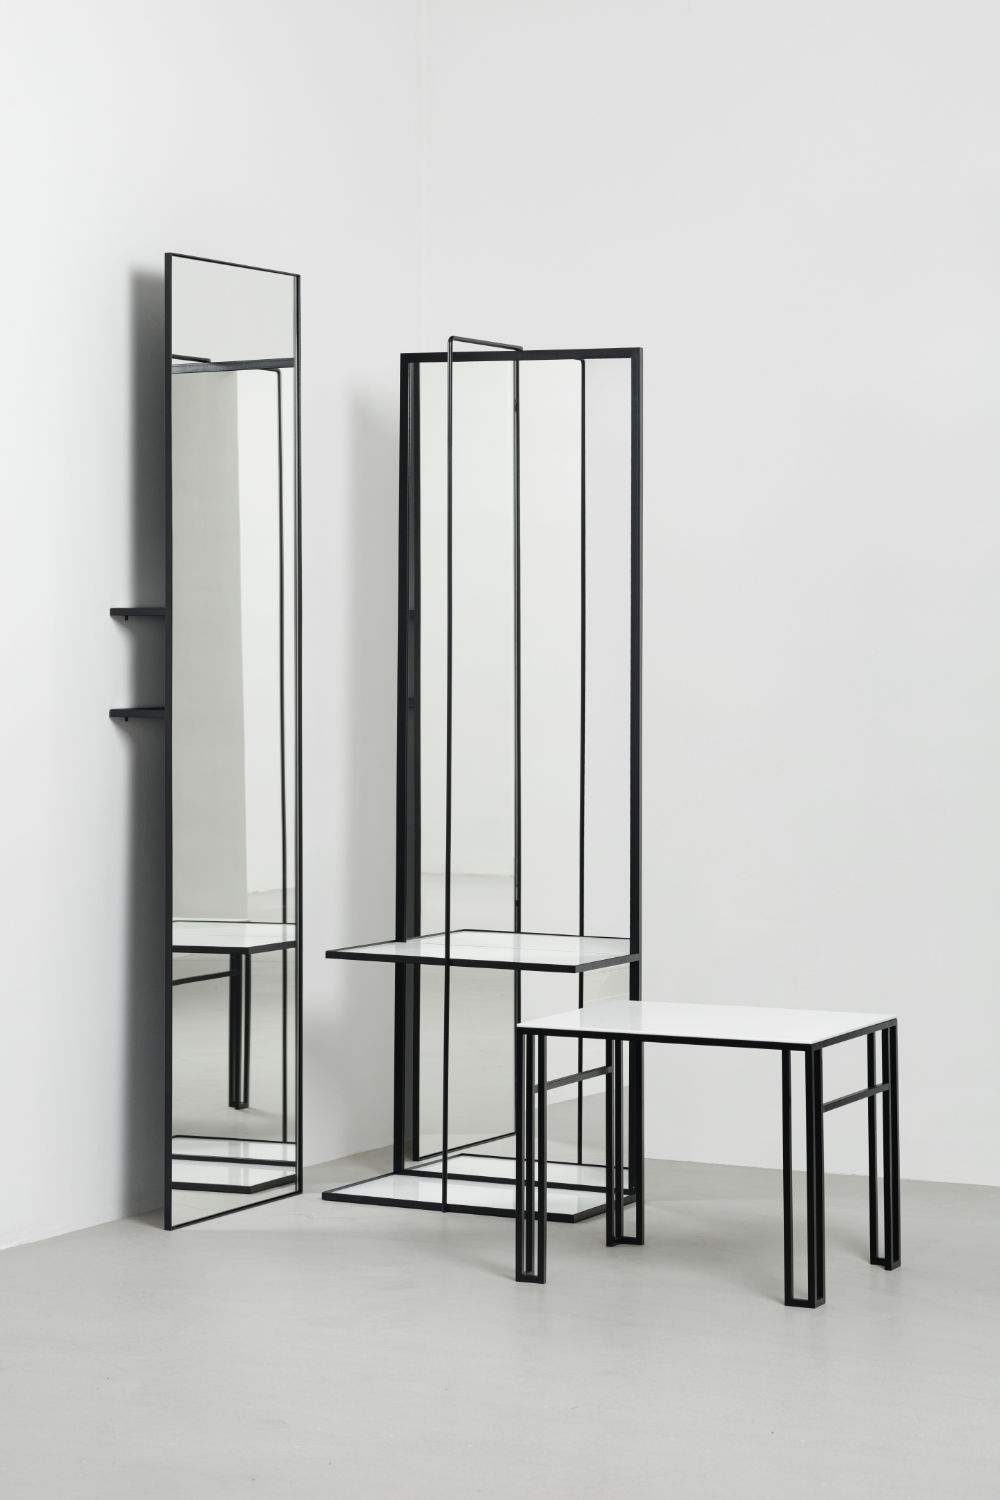 Wandspiegel mit Stahlrahmen Spiegelgarderobe mit Stahlrahmen und Beistelltisch aus Stahl und weißem Glas